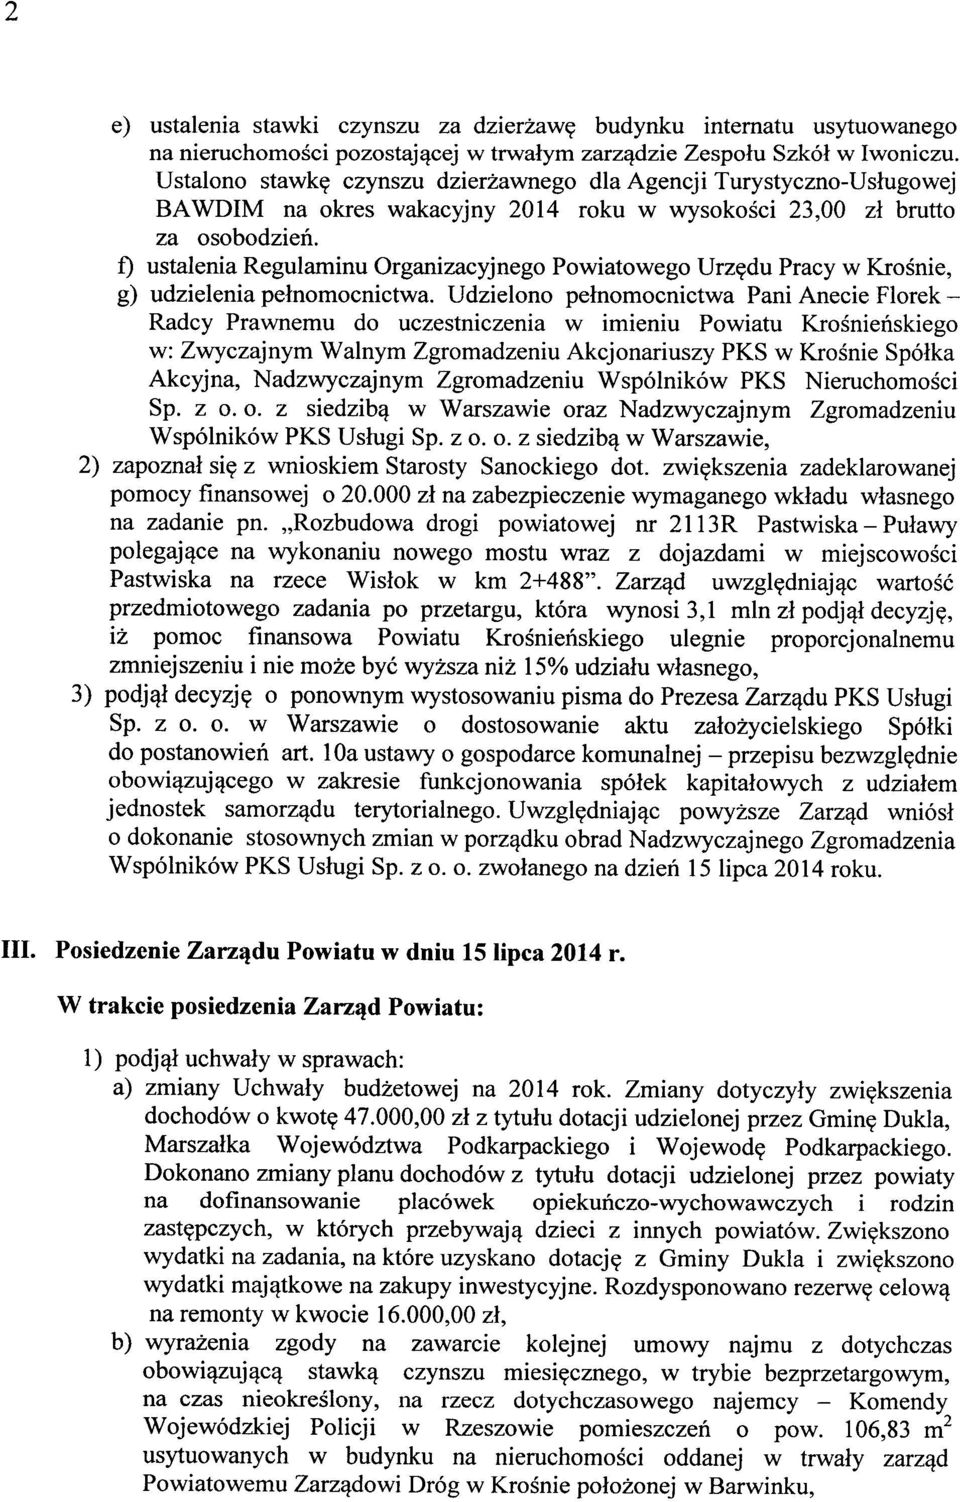 f) ustalenia Regulaminu Organizacyjnego Powiatowego Urzędu Pracy w Krośnie, g) udzielenia pełnomocnictwa.